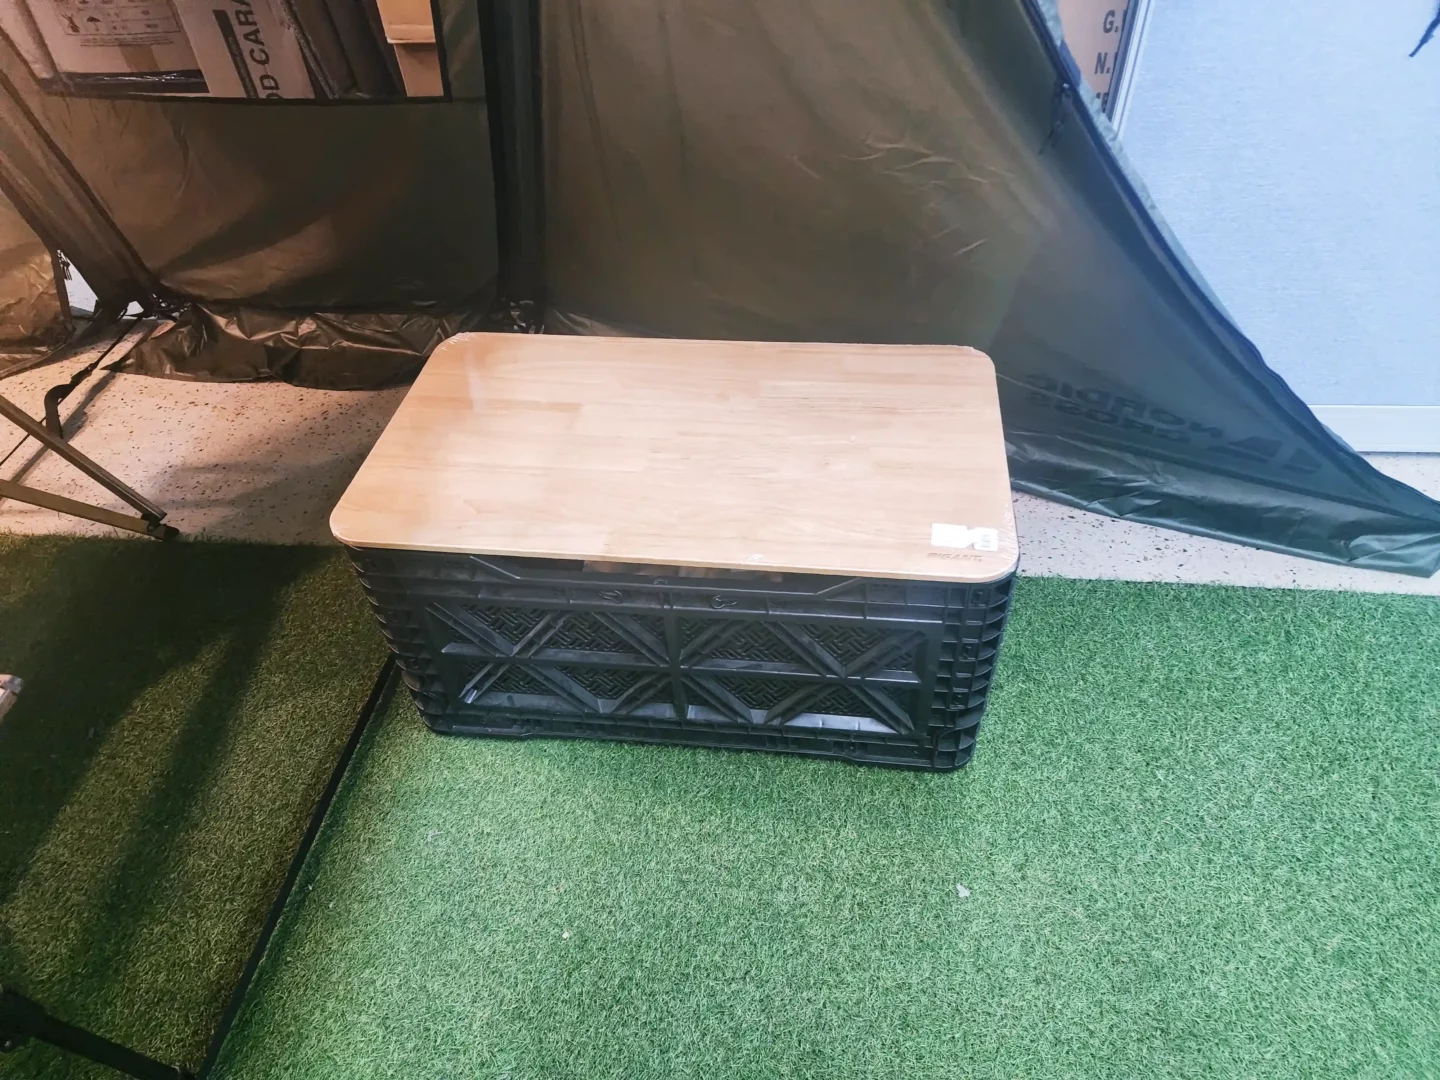 캠핑용품 폴딩박스 나무판